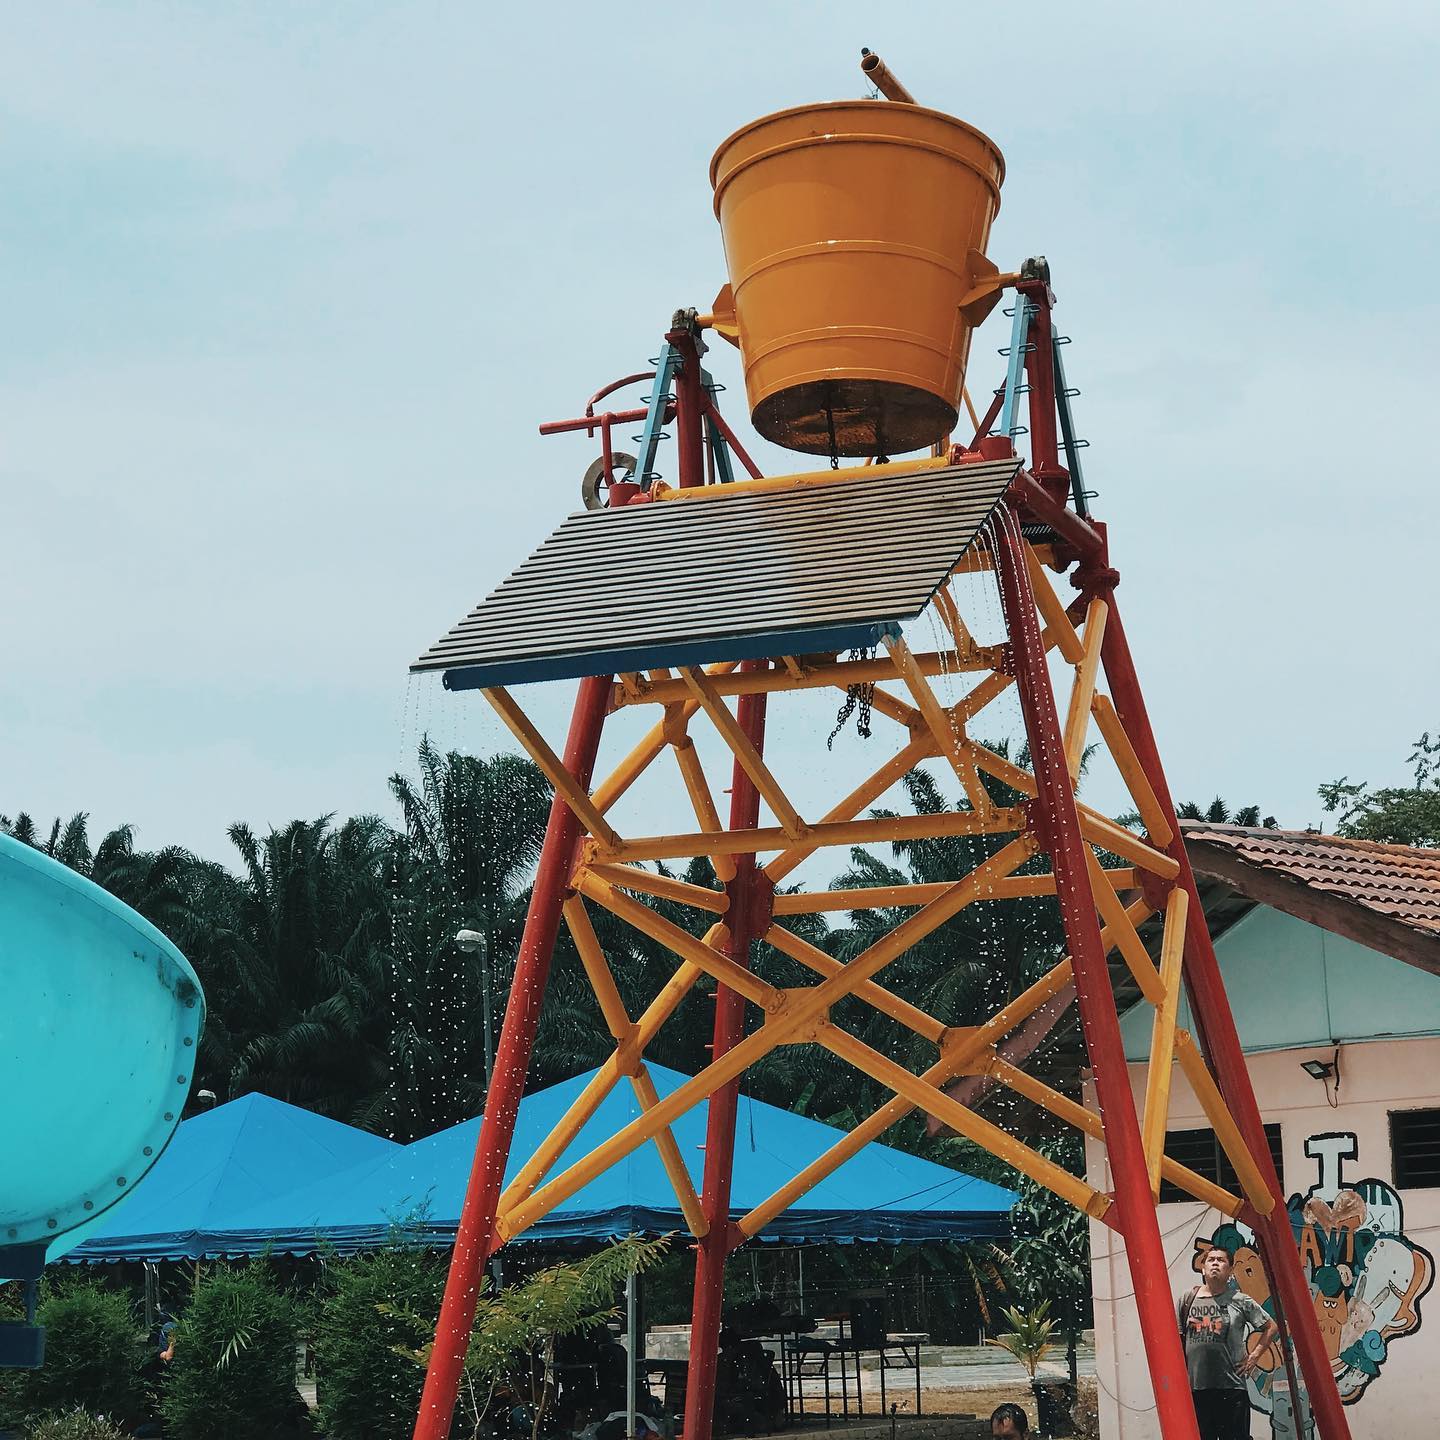 Asahan Water Theme Park